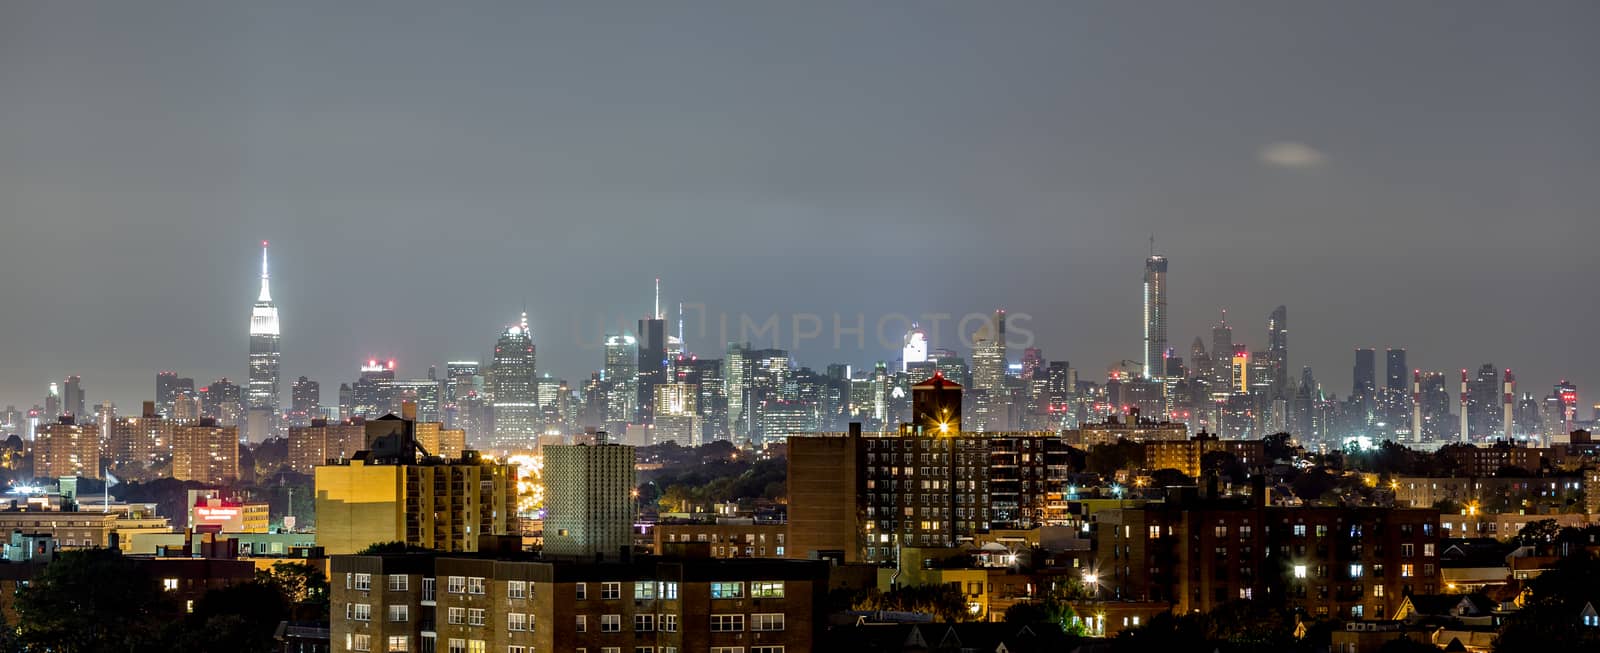 Manhattan skyline at night by derejeb